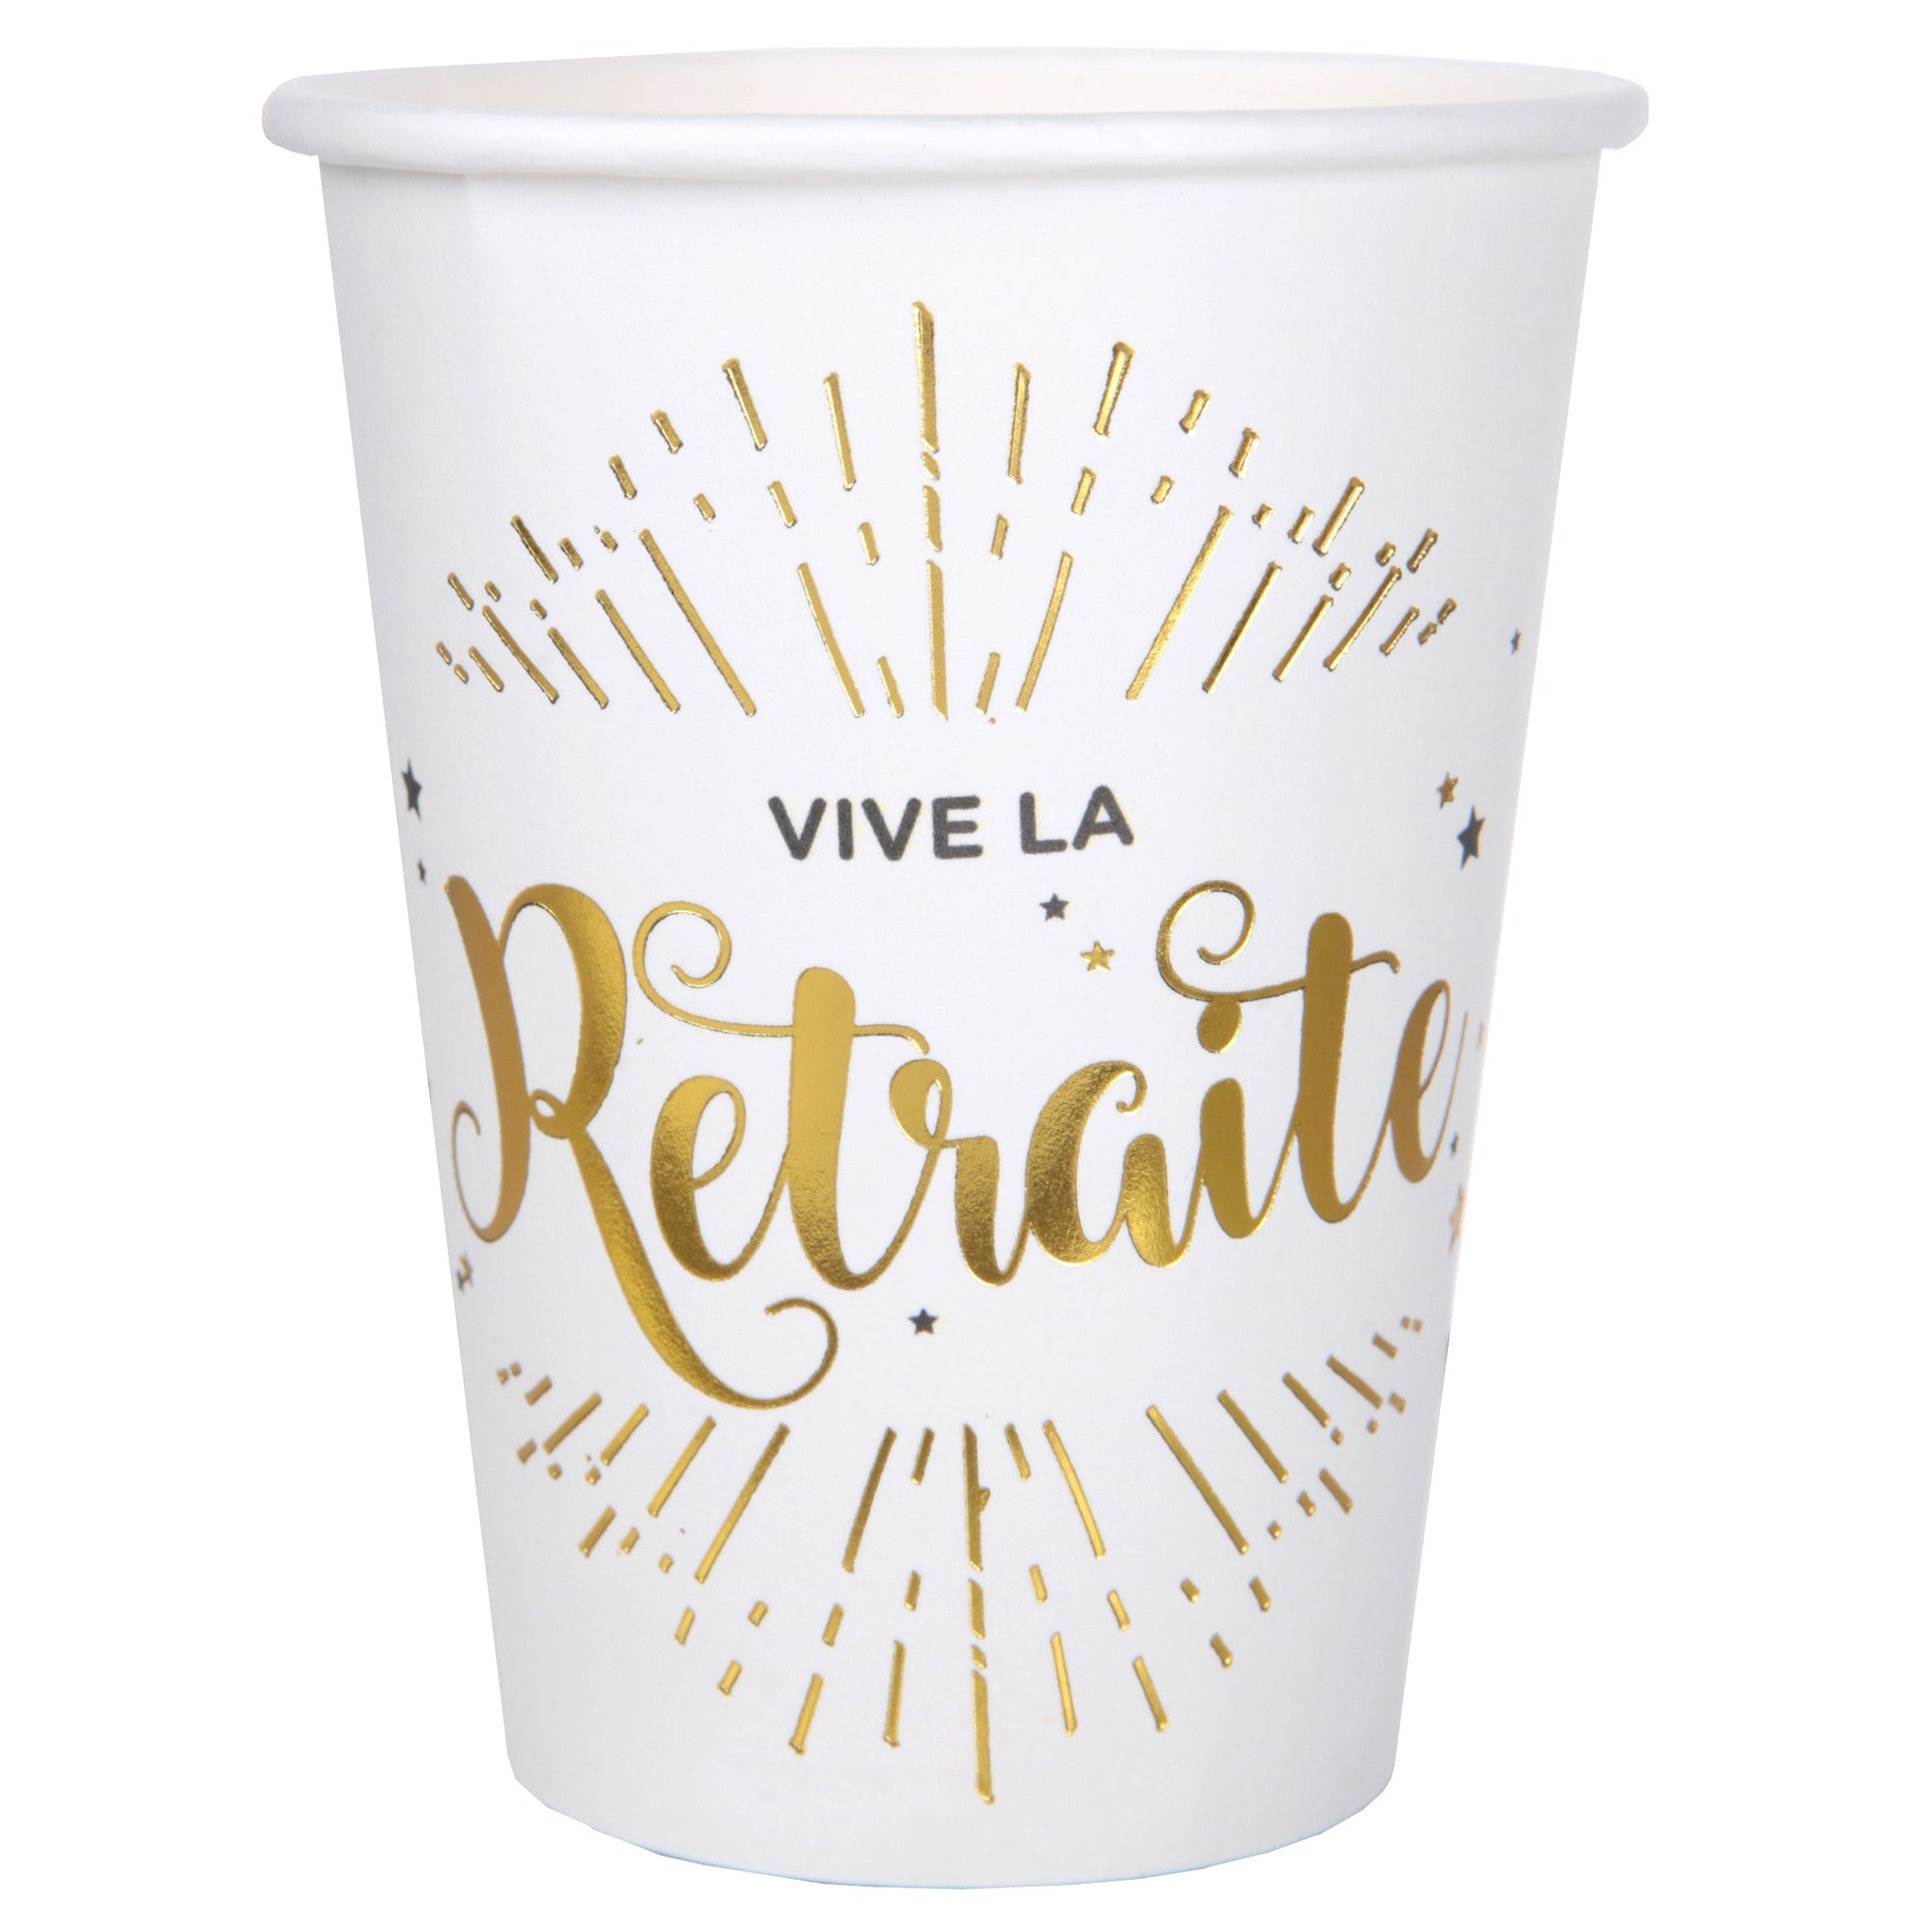 Vive La Retraite 10 Paper Cups White and Gold 9oz